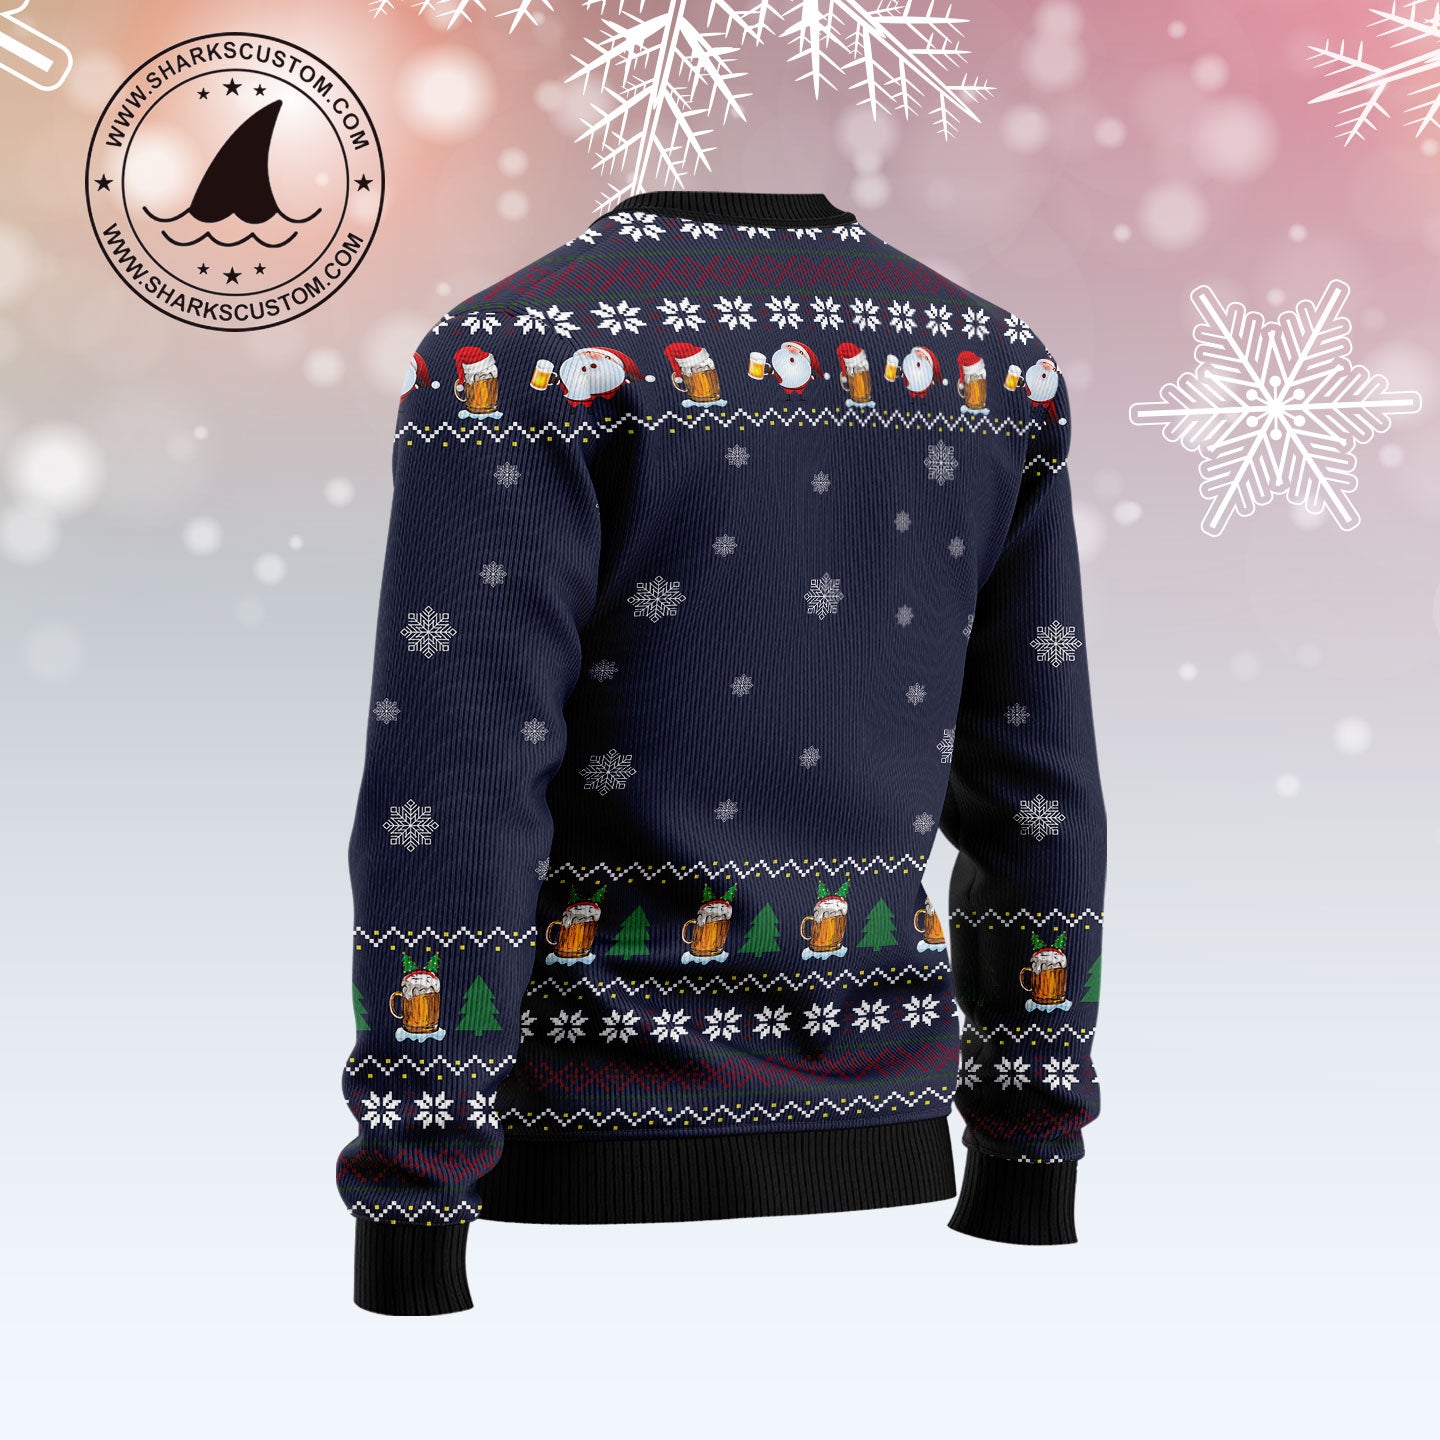 Blender Bottle - 20oz Skins Ugly Holiday Christmas Sweater - Elfie